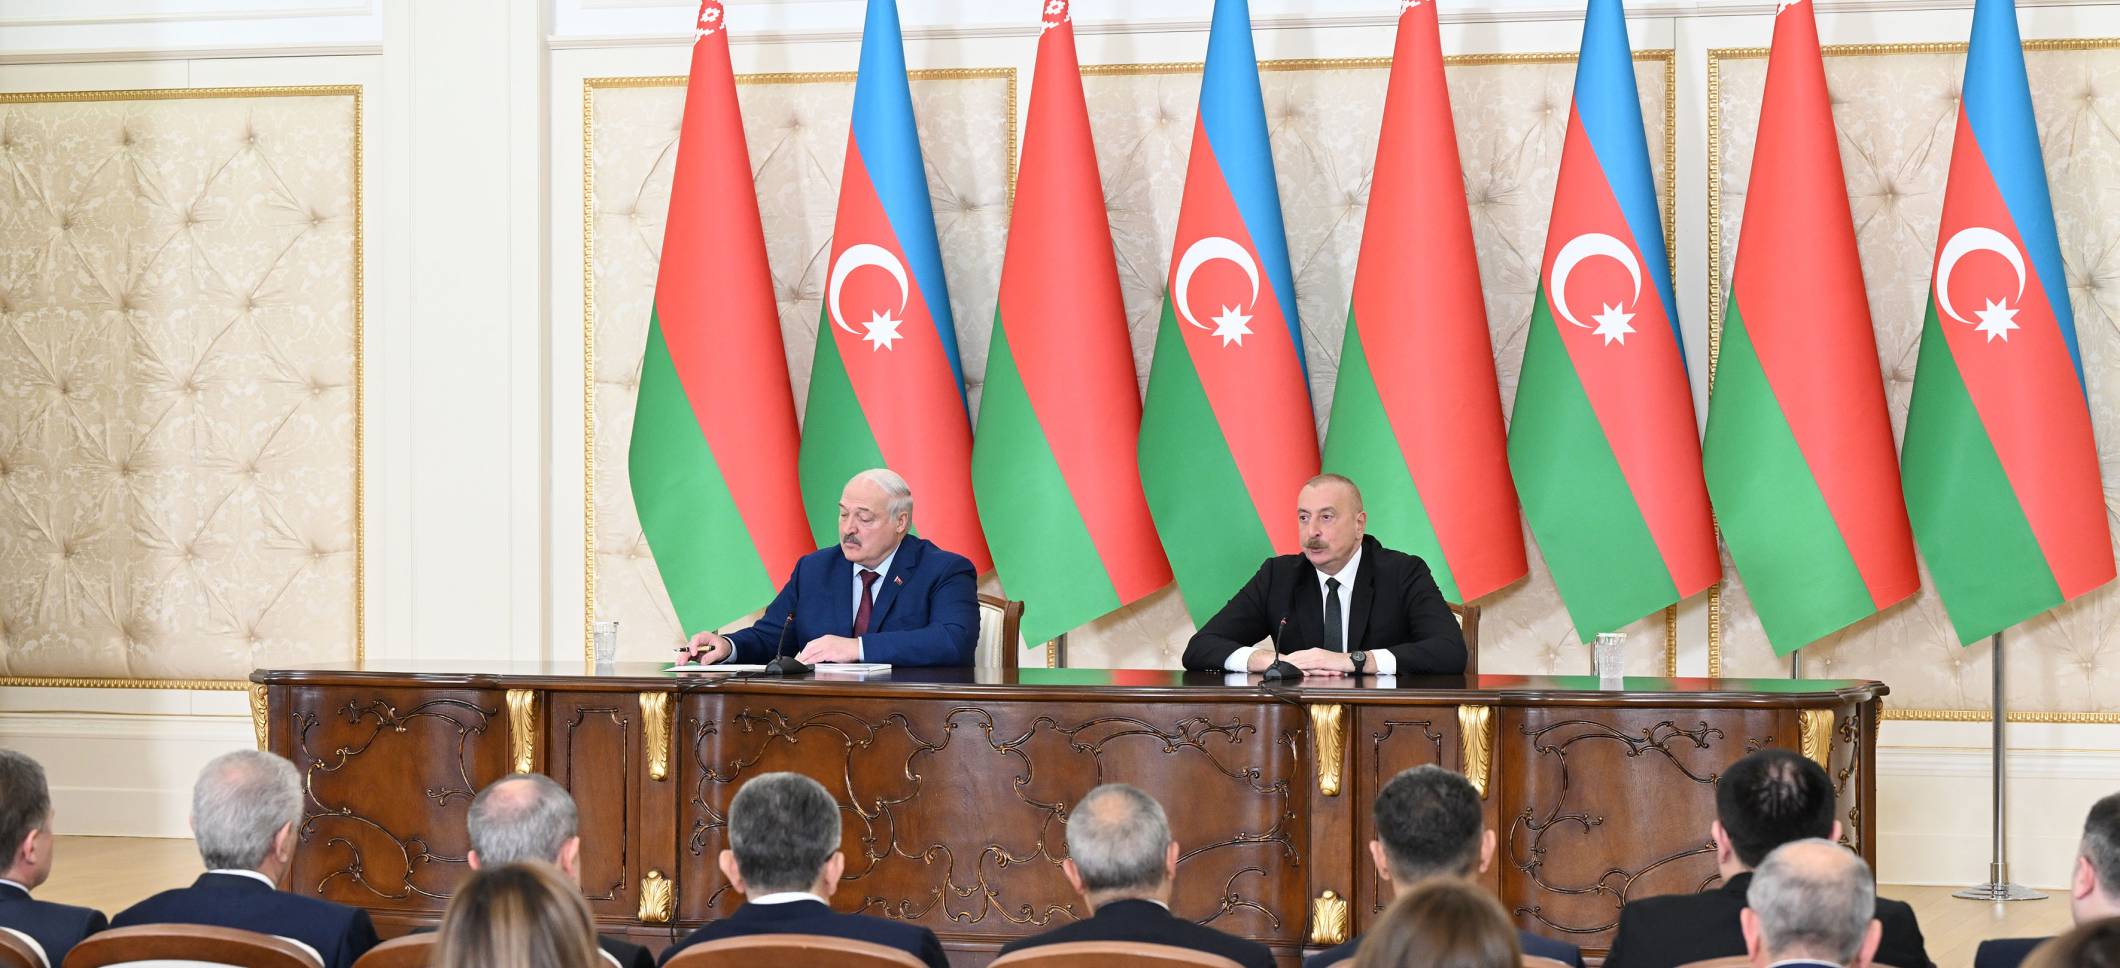 Ильхам Алиев и Президент Александр Лукашенко выступили с заявлениями для прессы